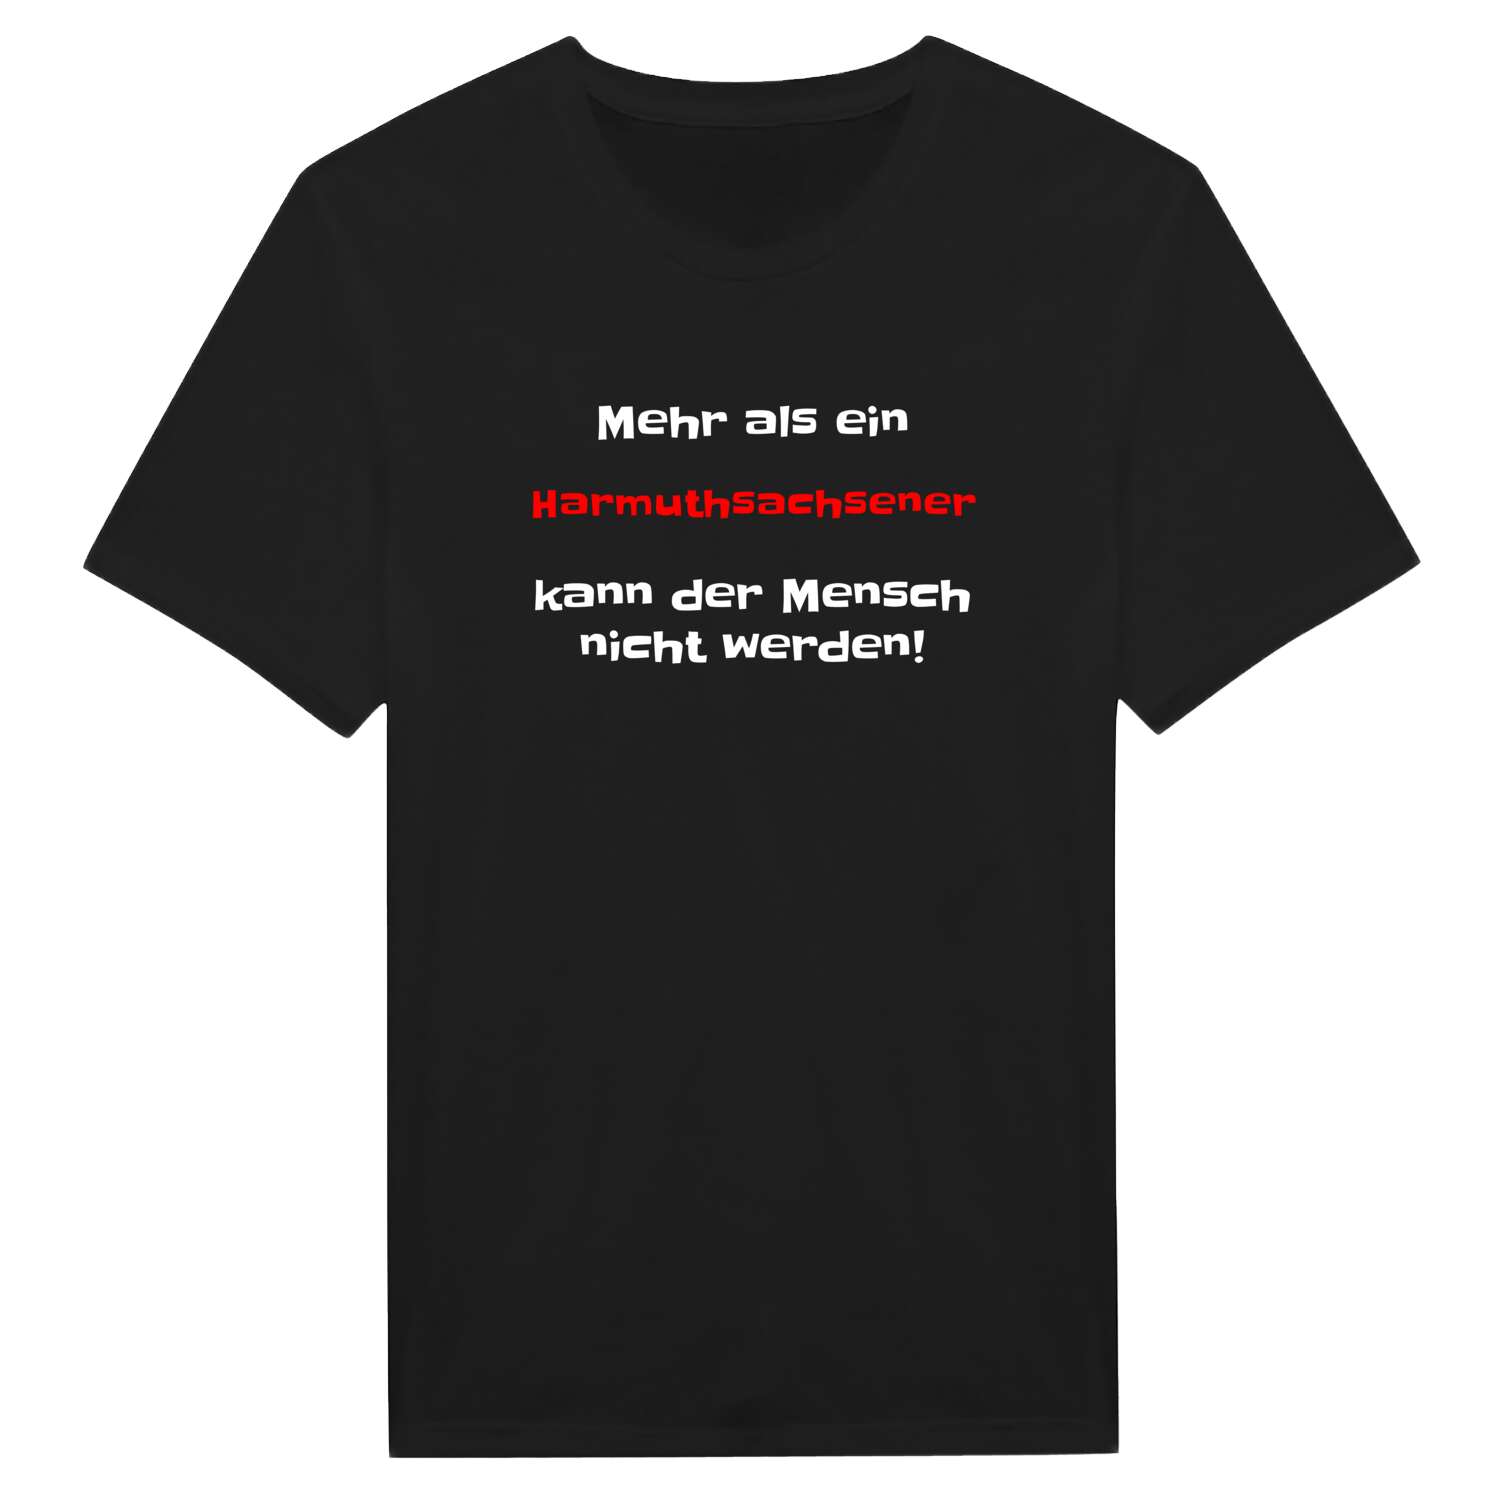 Harmuthsachsen T-Shirt »Mehr als ein«